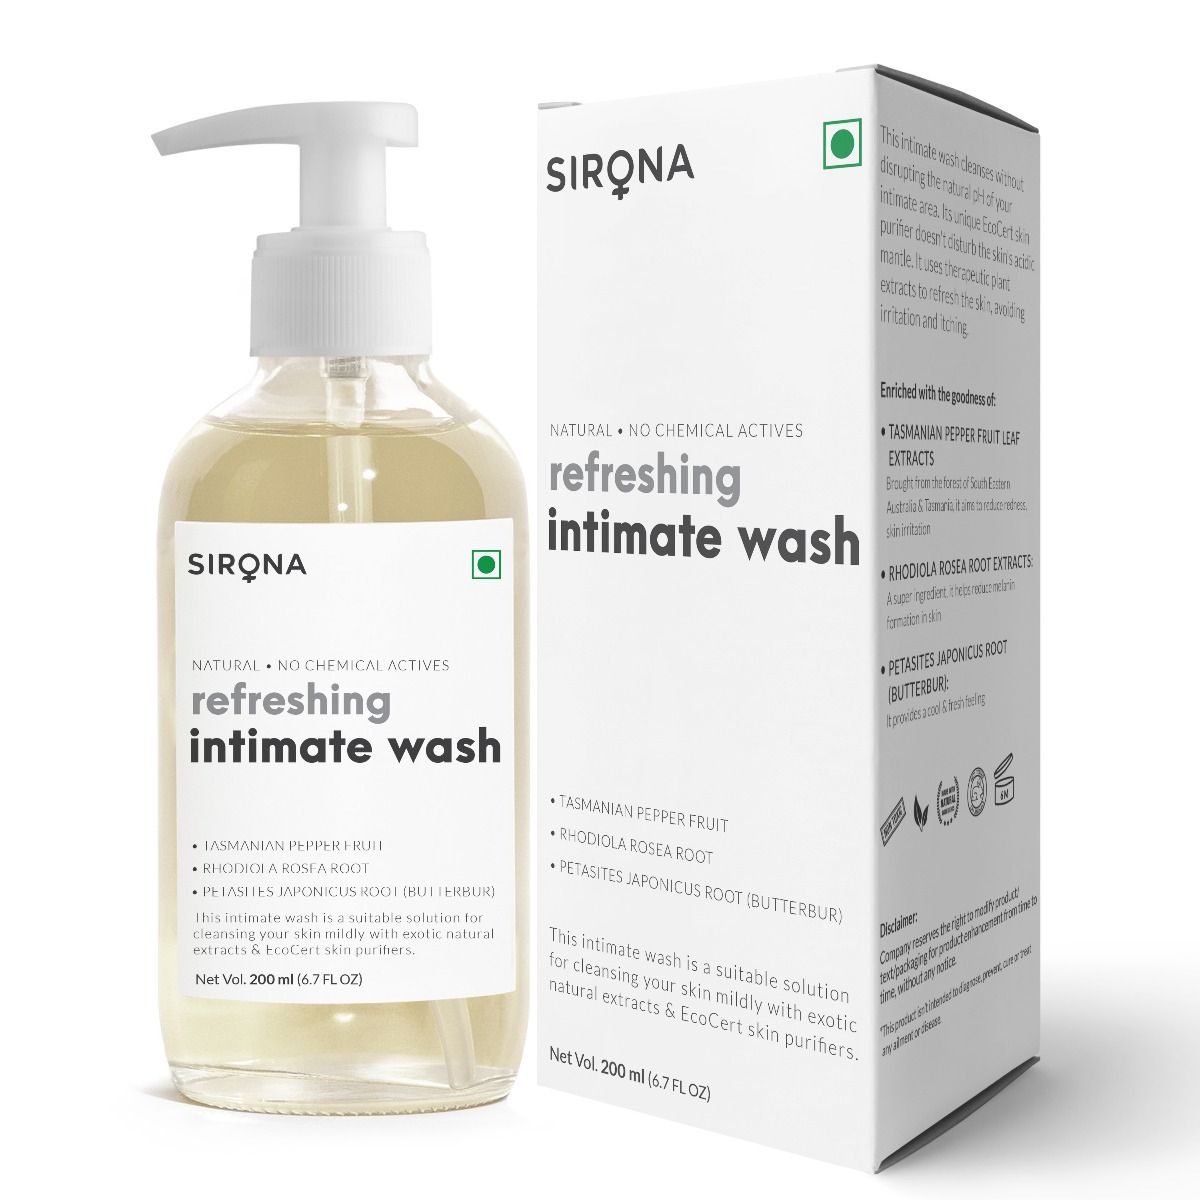 Sirona Refreshing Intimate Wash, 200 ml, Pack of 1 